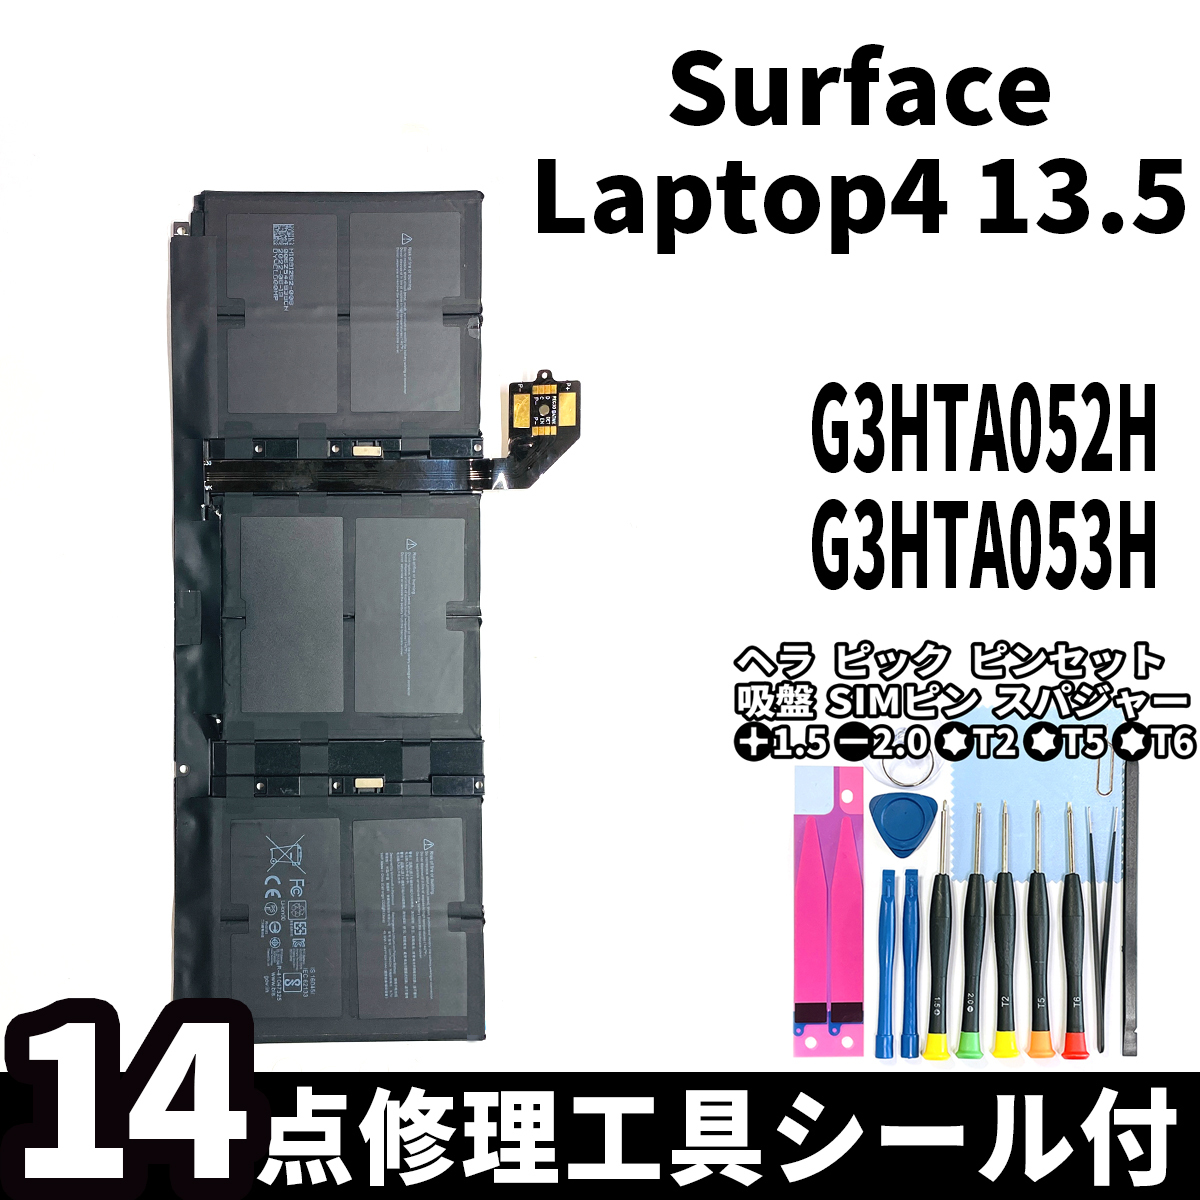 国内即日発送!純正新品!Surface Laptop4 13.5 バッテリー G3HTA052H DYNT02 電池パック交換 本体用内蔵battery 両面テープ 修理工具付_画像1